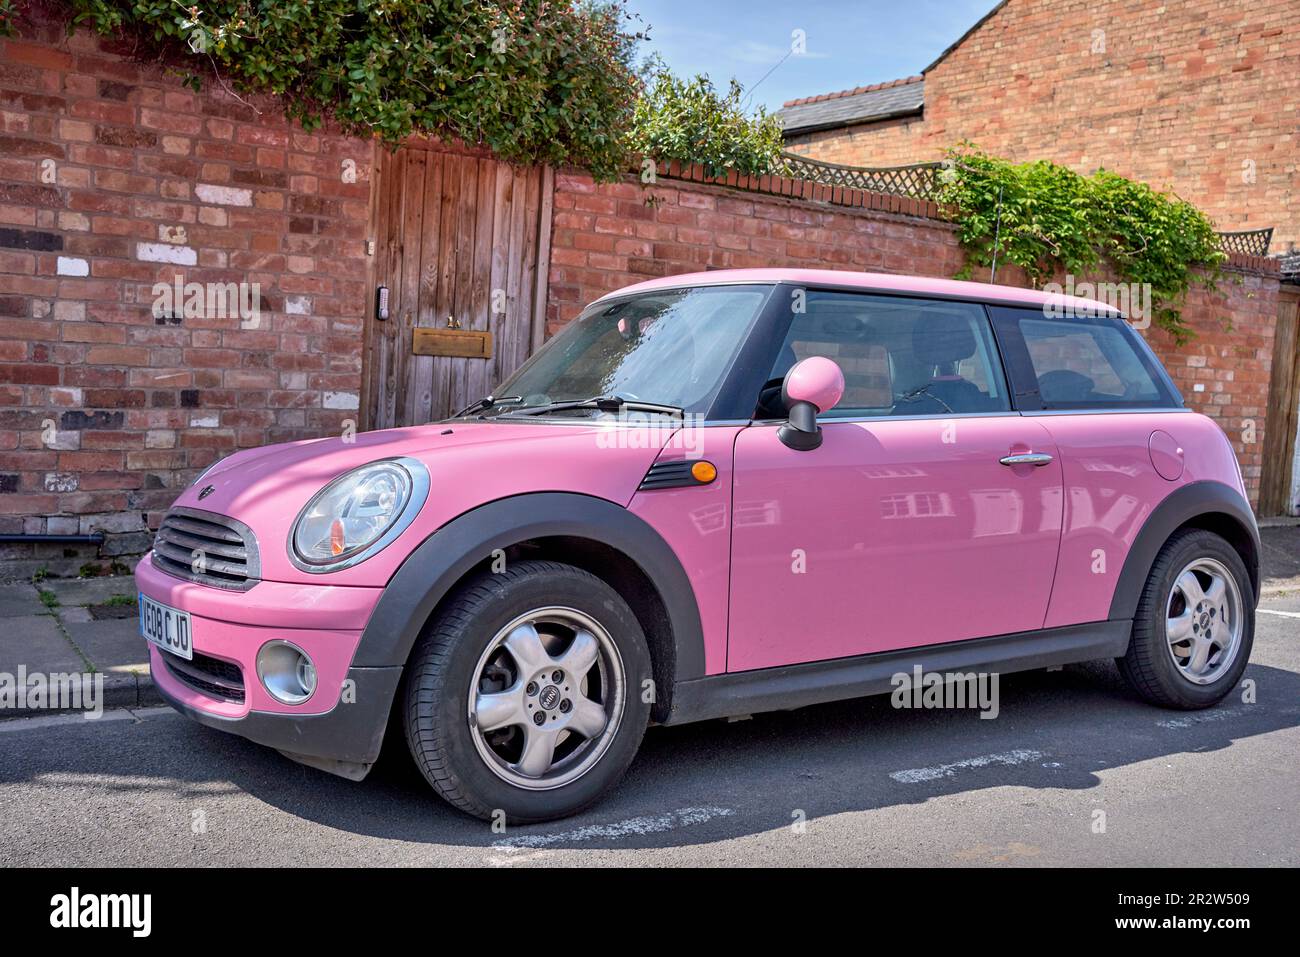 Pink Mini car. England UK Stock Photo